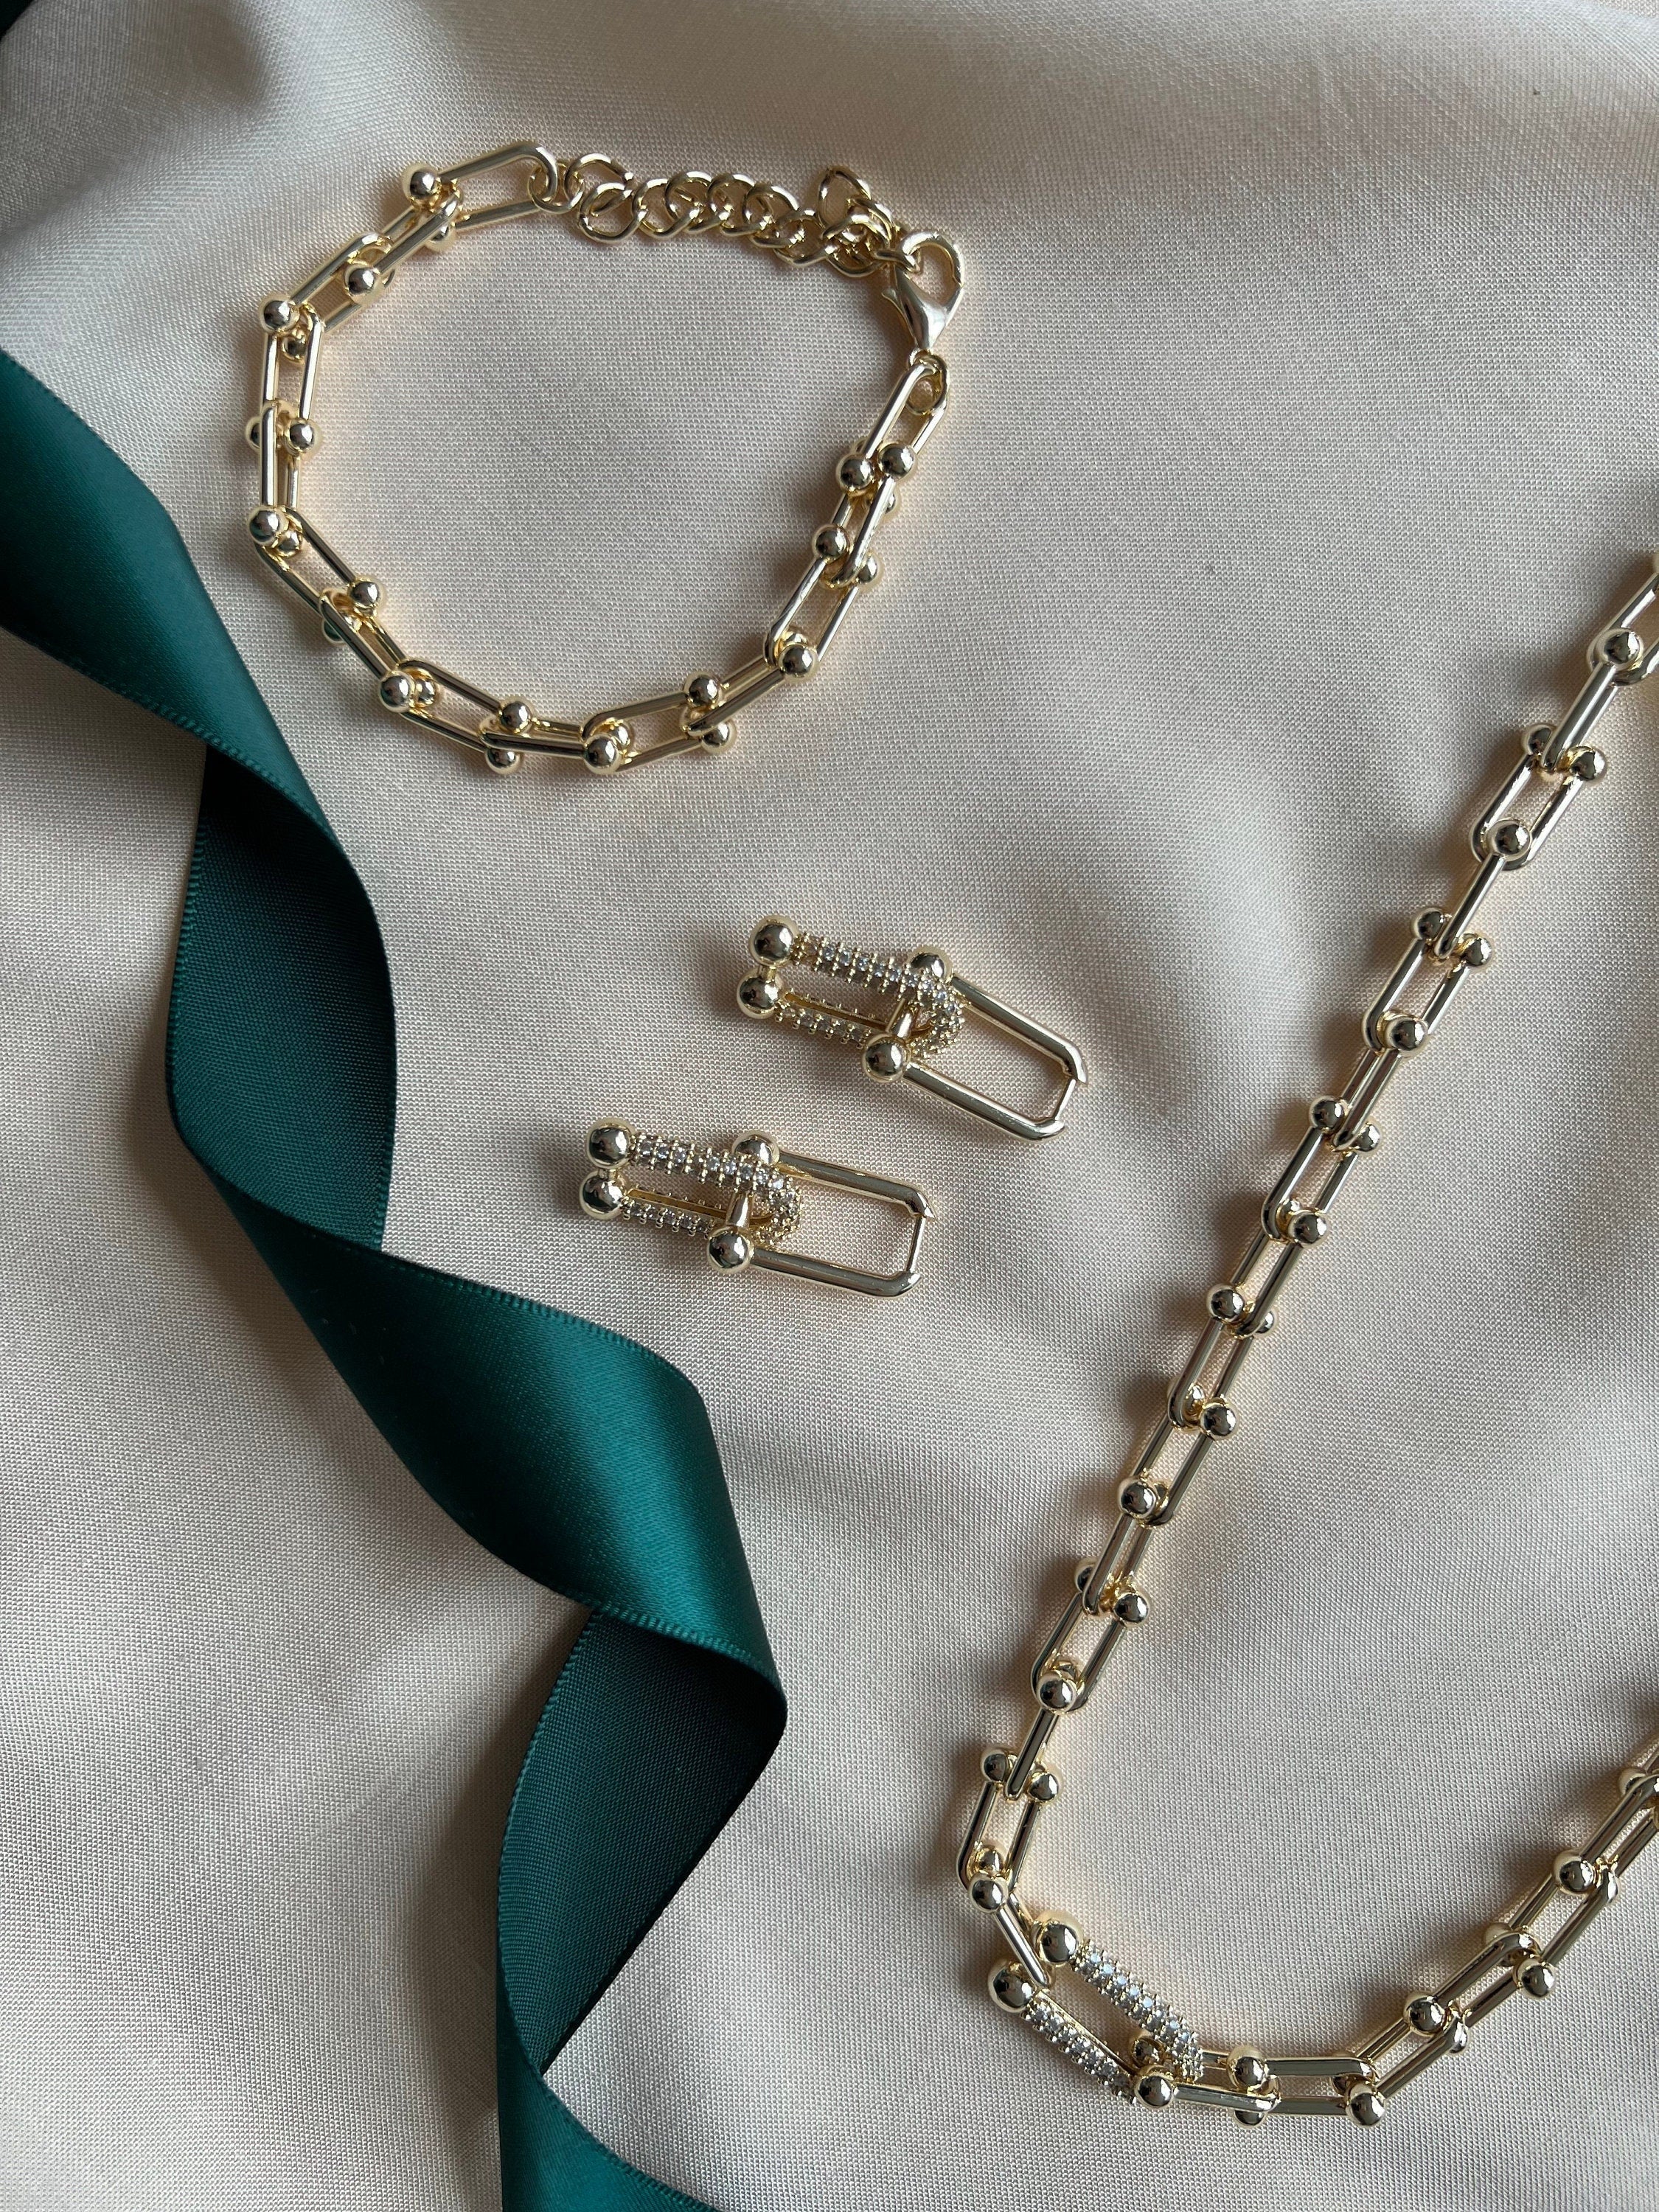 Ball & Chain U Link Earrings, Bracelet or Necklace - HardWear Inspired